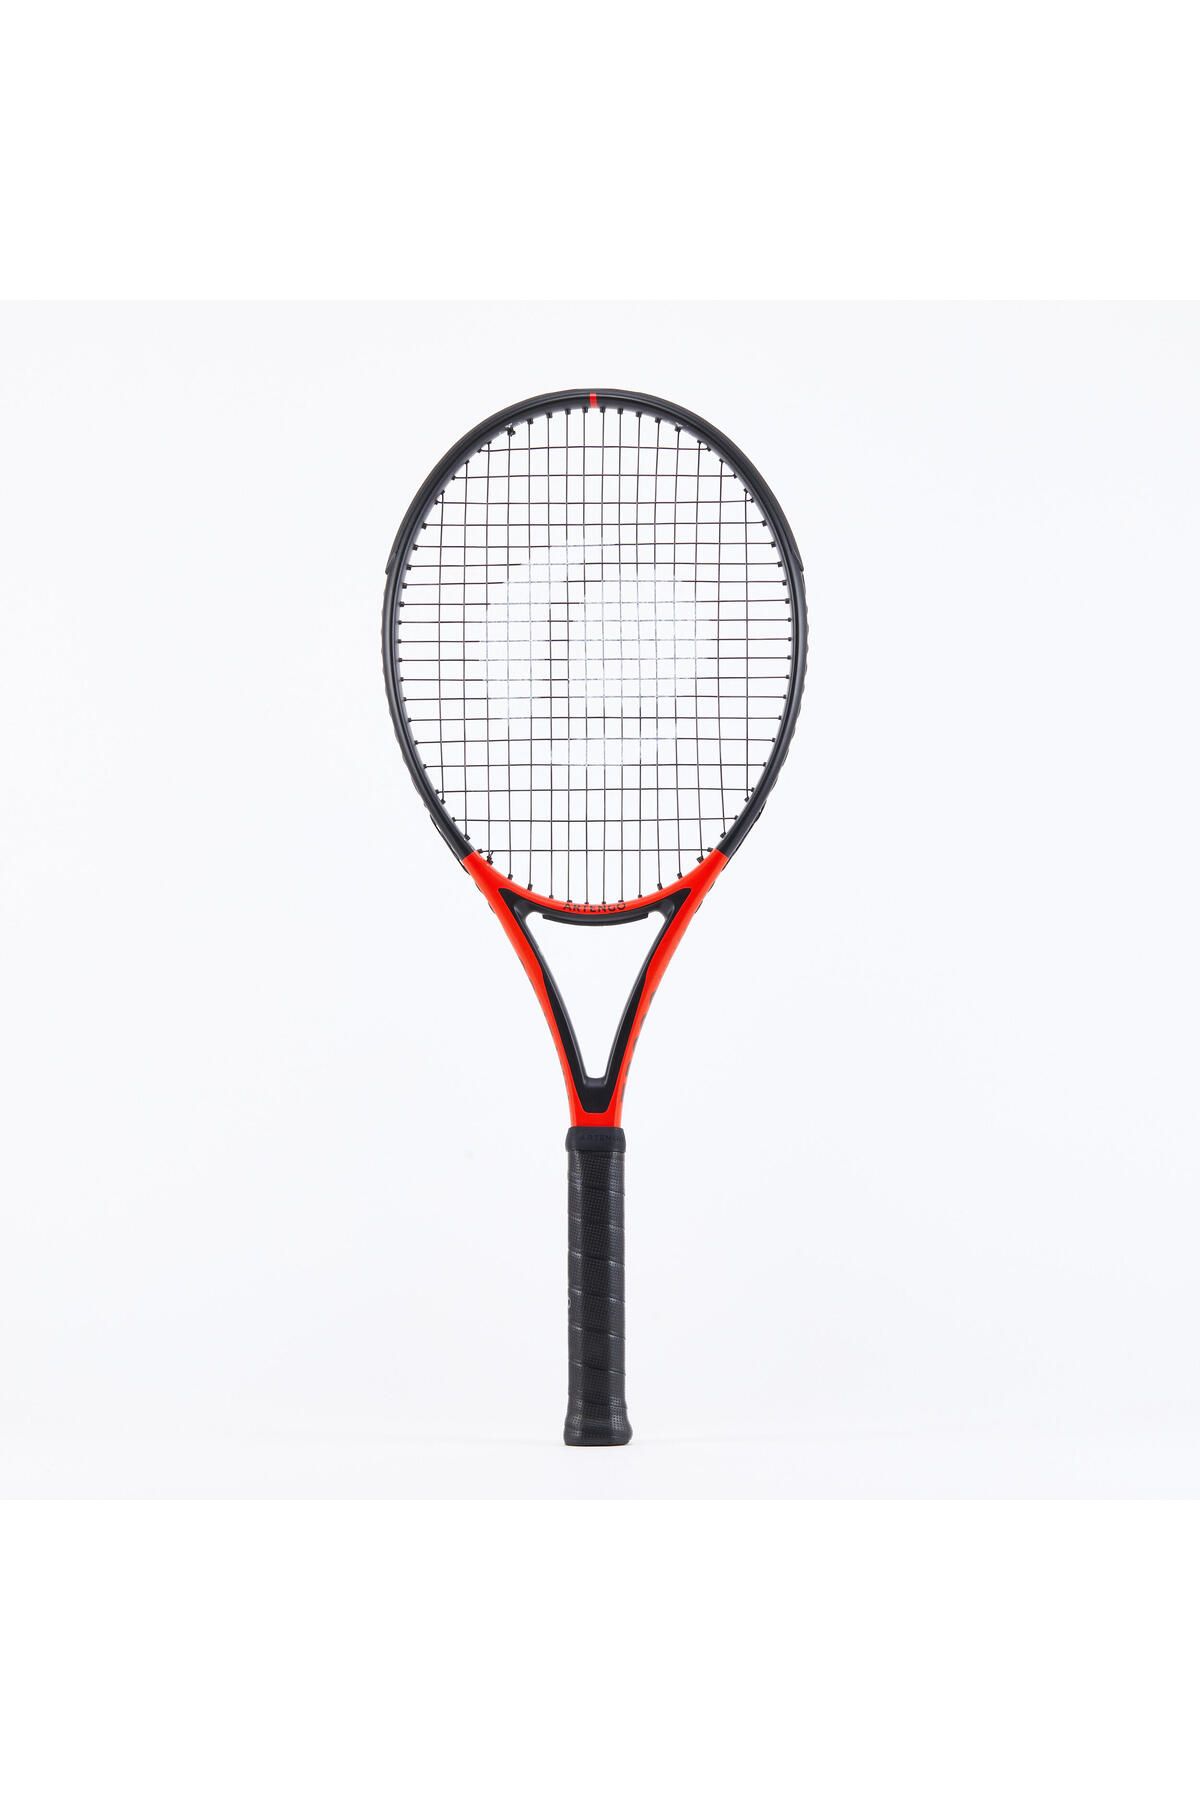 Decathlon Yetişkin Tenis Raketi - Kırmızı / Siyah - 300 G. - Tr990 Power Pro